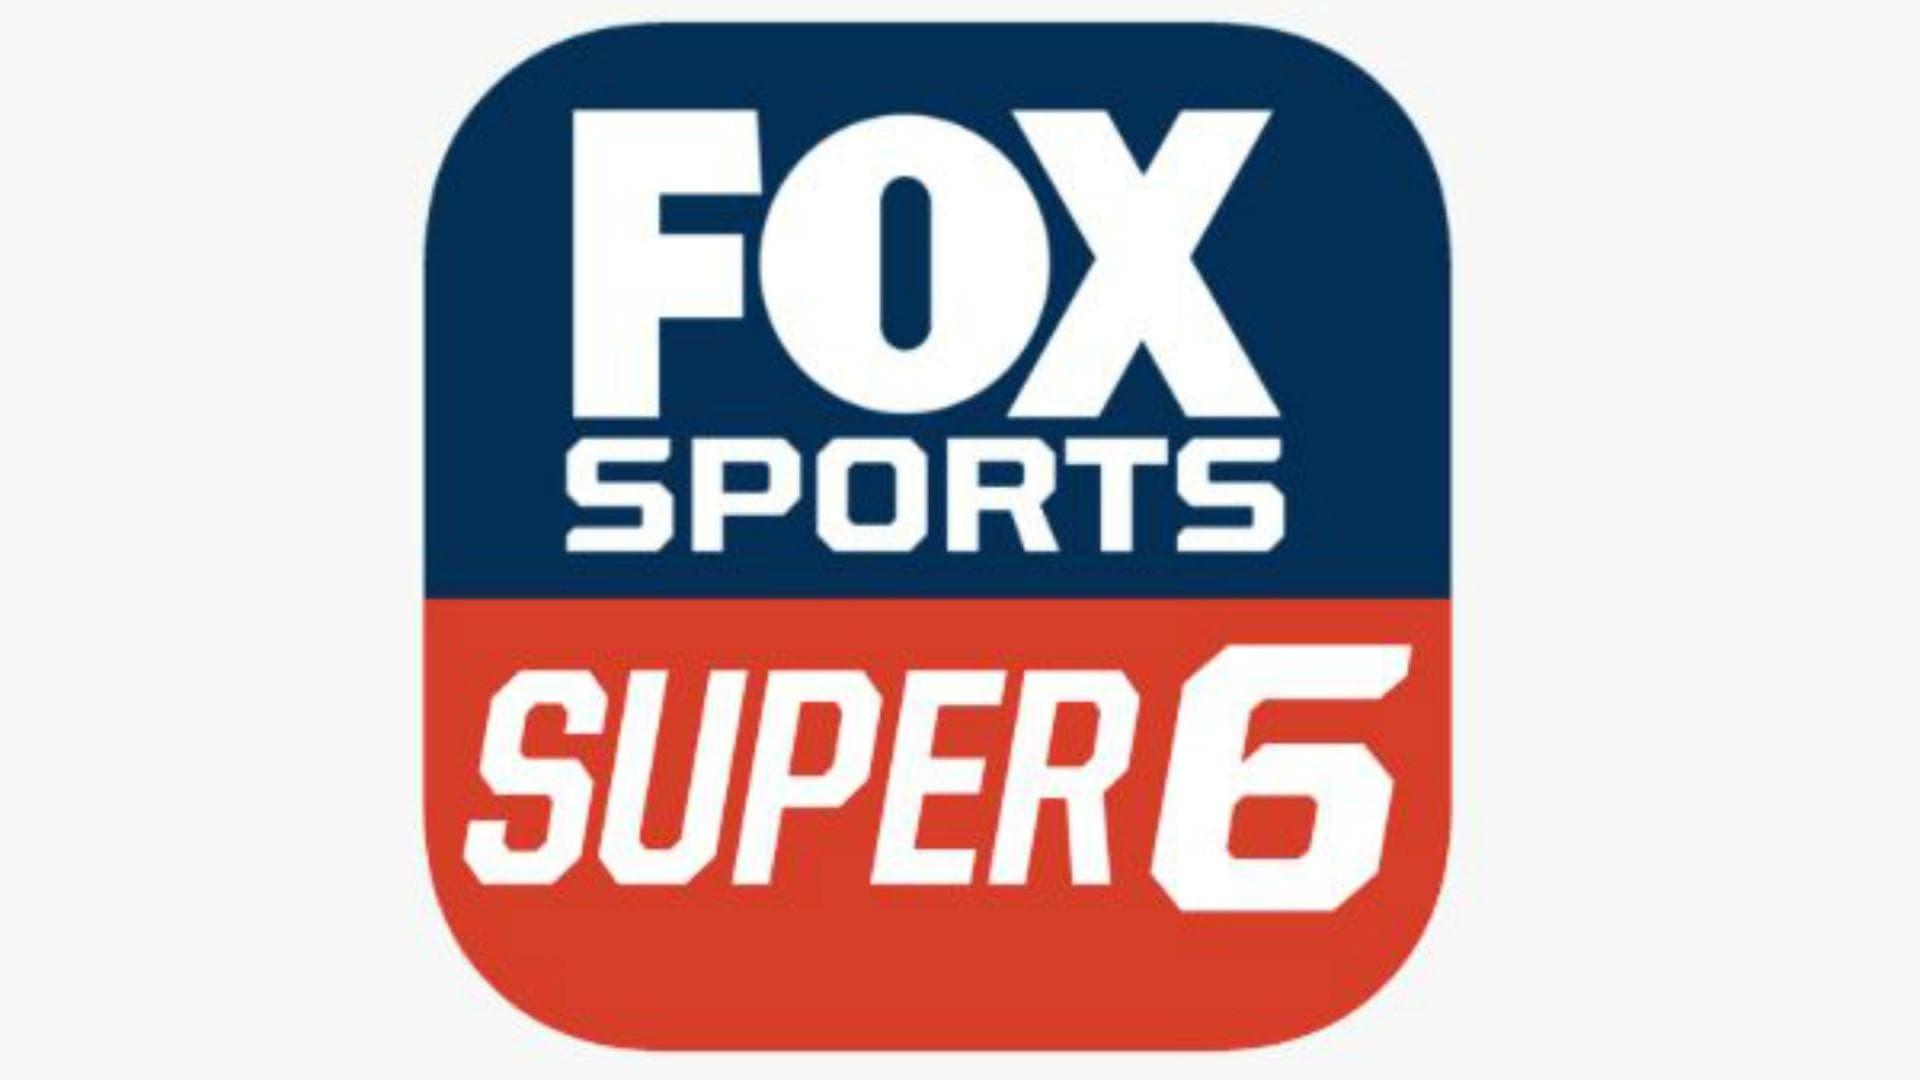 O jogo foi lançado nos Estados Unidos na semana passada. No FOX Sports Super 6 os fãs competem por mais de US$250.000 por semana.